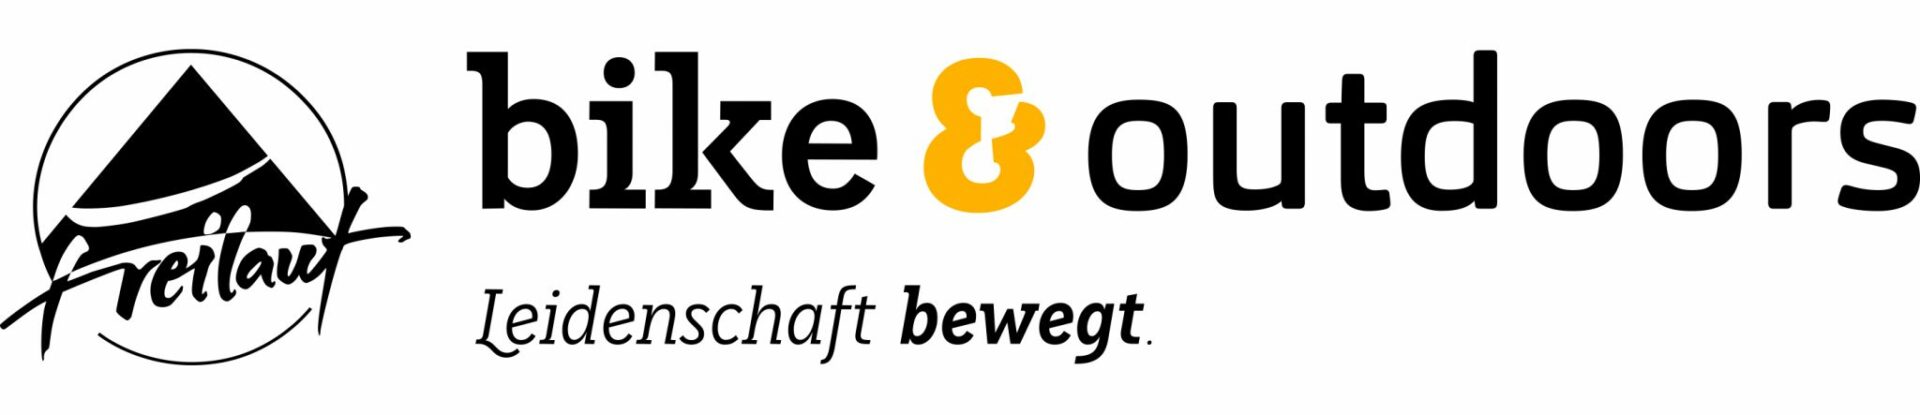 DAV Sparkassen Bergwelt | Sponsoring | Logo Freilauf Bike & Outdoors